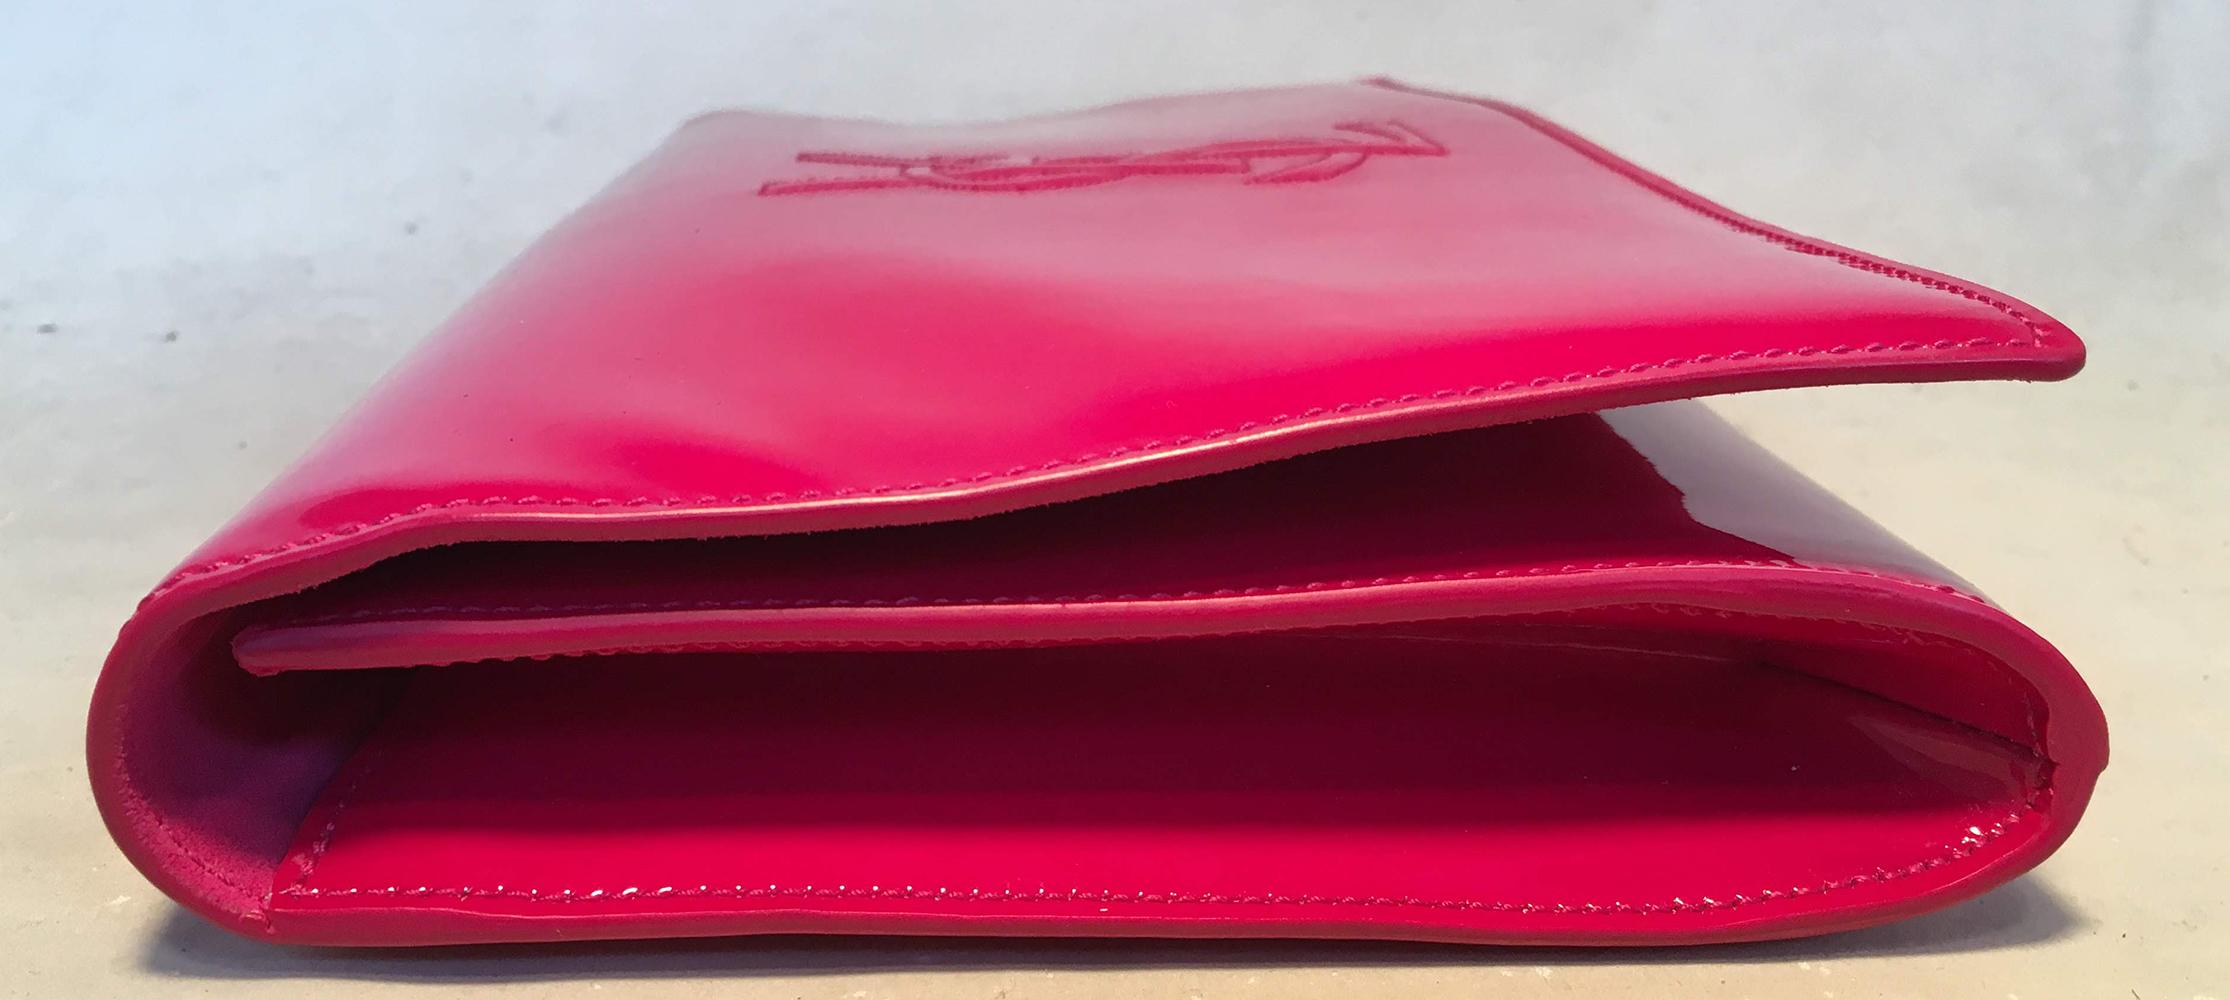 Women's YSL Yves Saint Laurent Belle de Jour Hot Pink Patent Leather Clutch